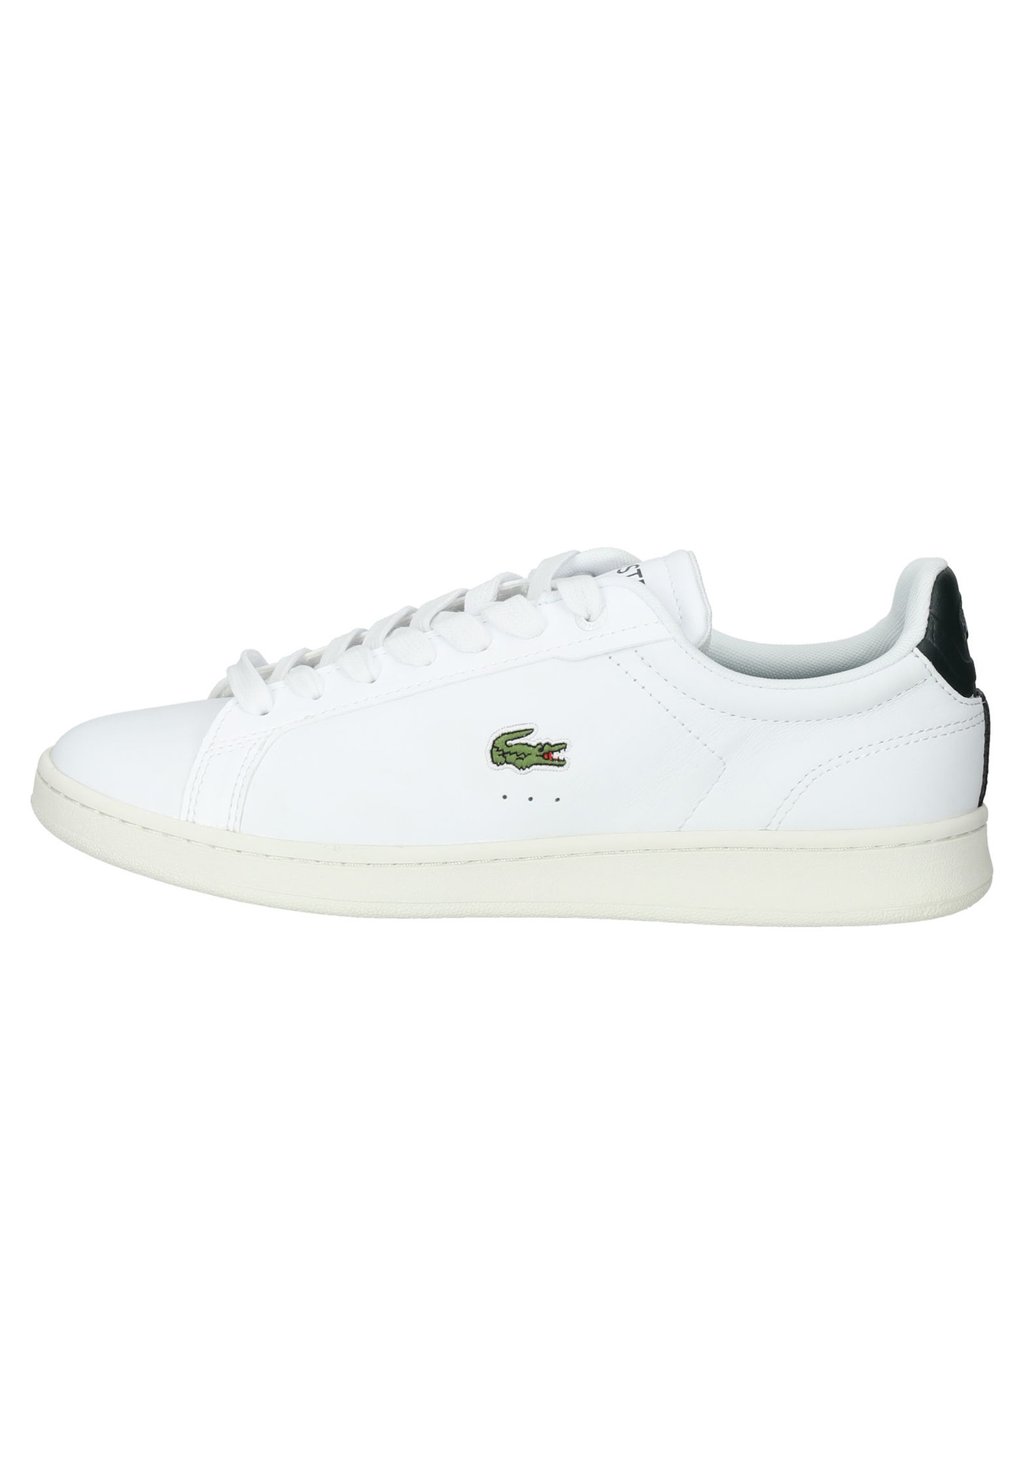 Кроссовки Lacoste Carnaby Pro 123 9 Sma, белый / темно-зеленый низкие кроссовки lacoste dk grn wt